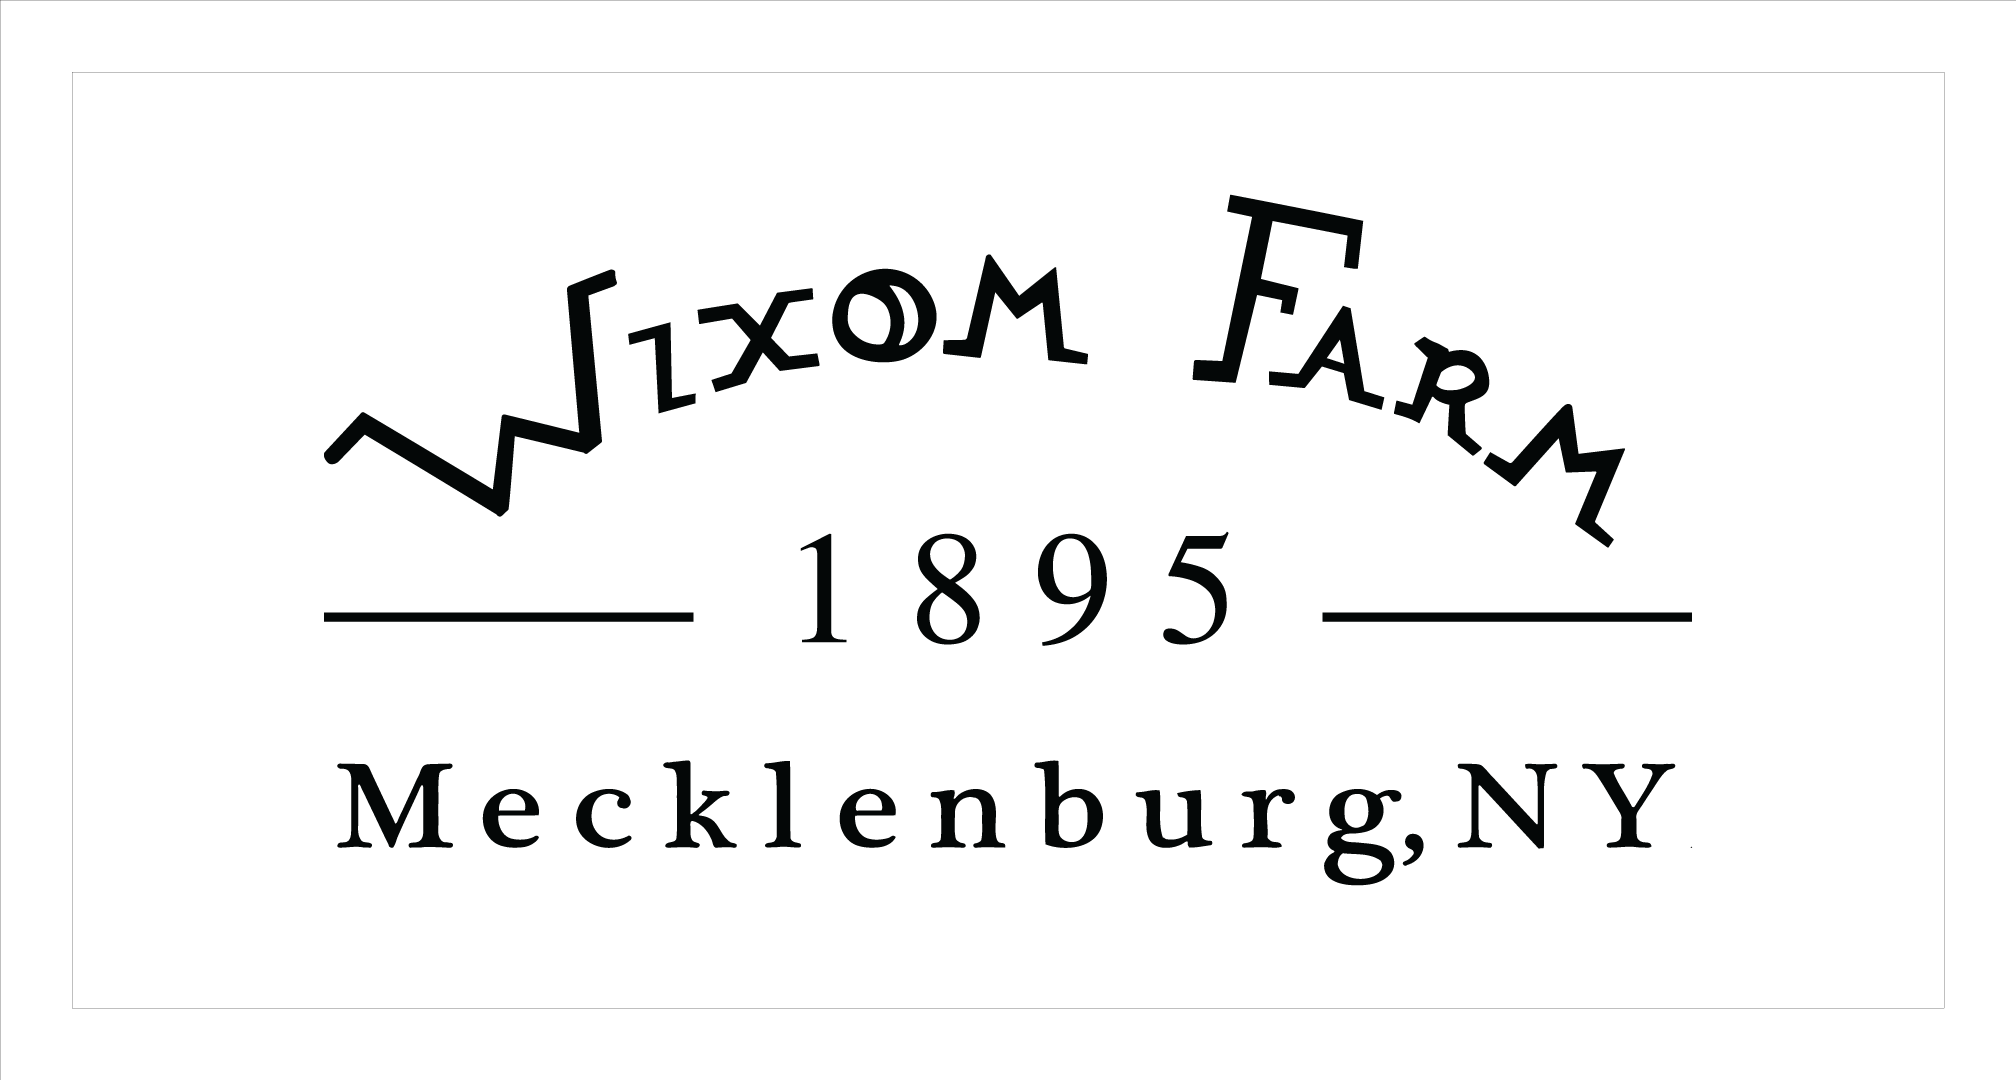 Wixom Farm